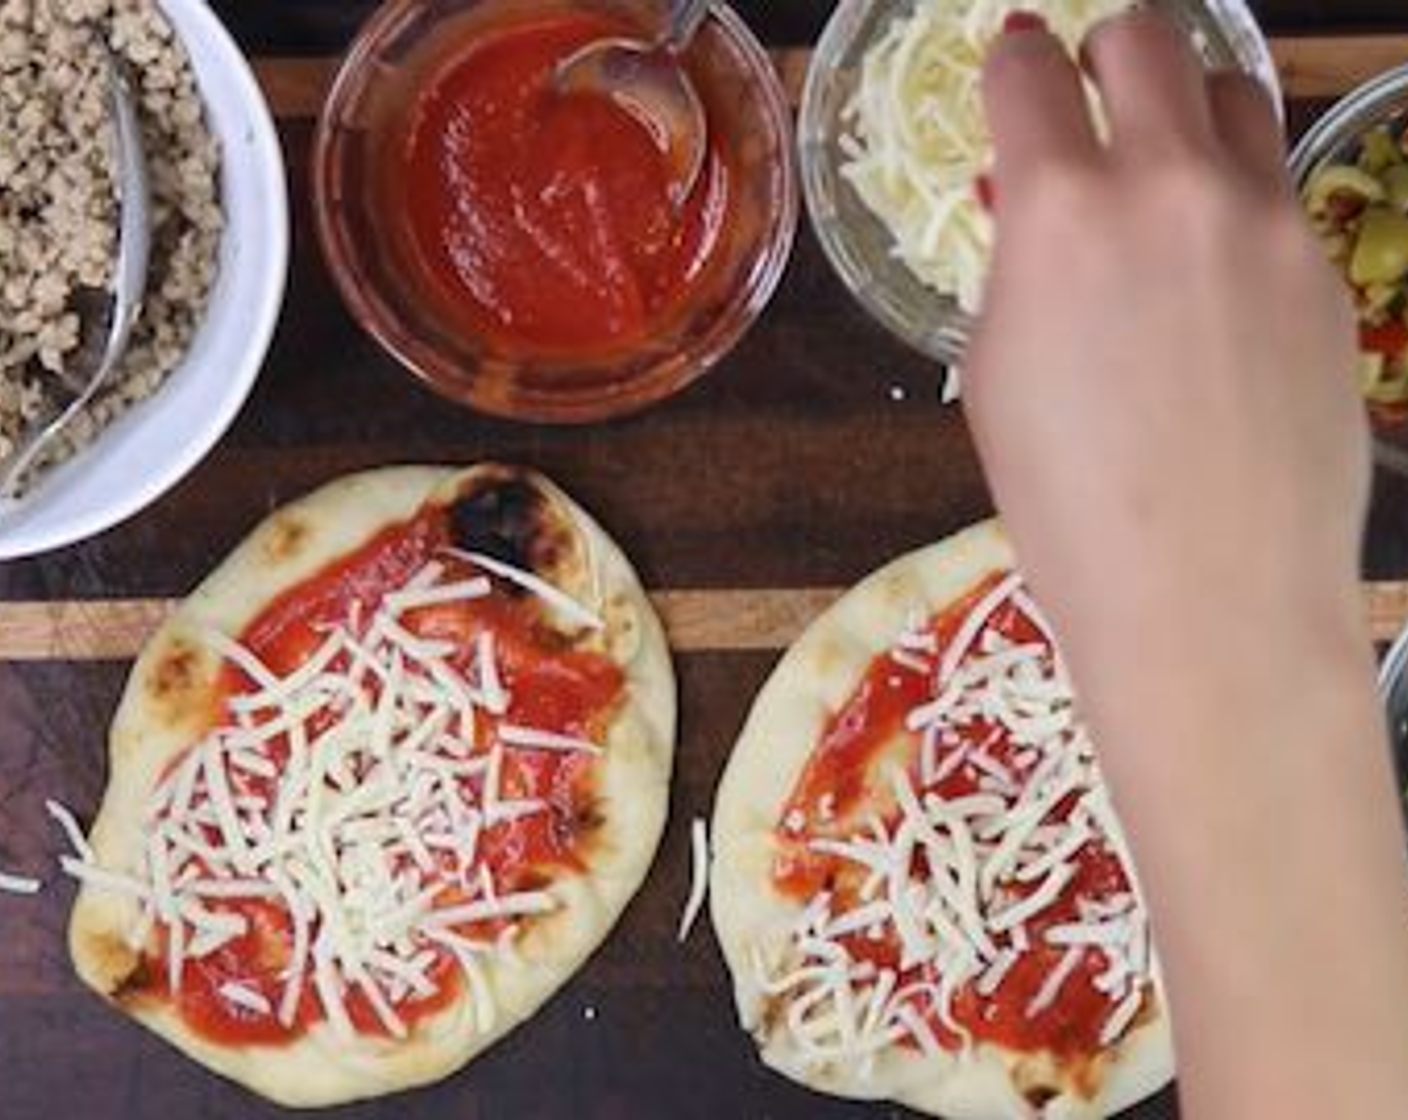 Schritt 5 Naan-Brote (4) auf eine flache Unterlage legen. Gewünschten Belag vorbereiten. 
Jetzt die Naan "Pizza" zusammensetzen: Tomatensauce (wenig) darauf verteilen, gefolgt von der Hälfte der gewünschten Menge Mozzarella (wenig). Mit Schweinefleisch belegen und dann noch etwas Mozzarella darauf streuen.